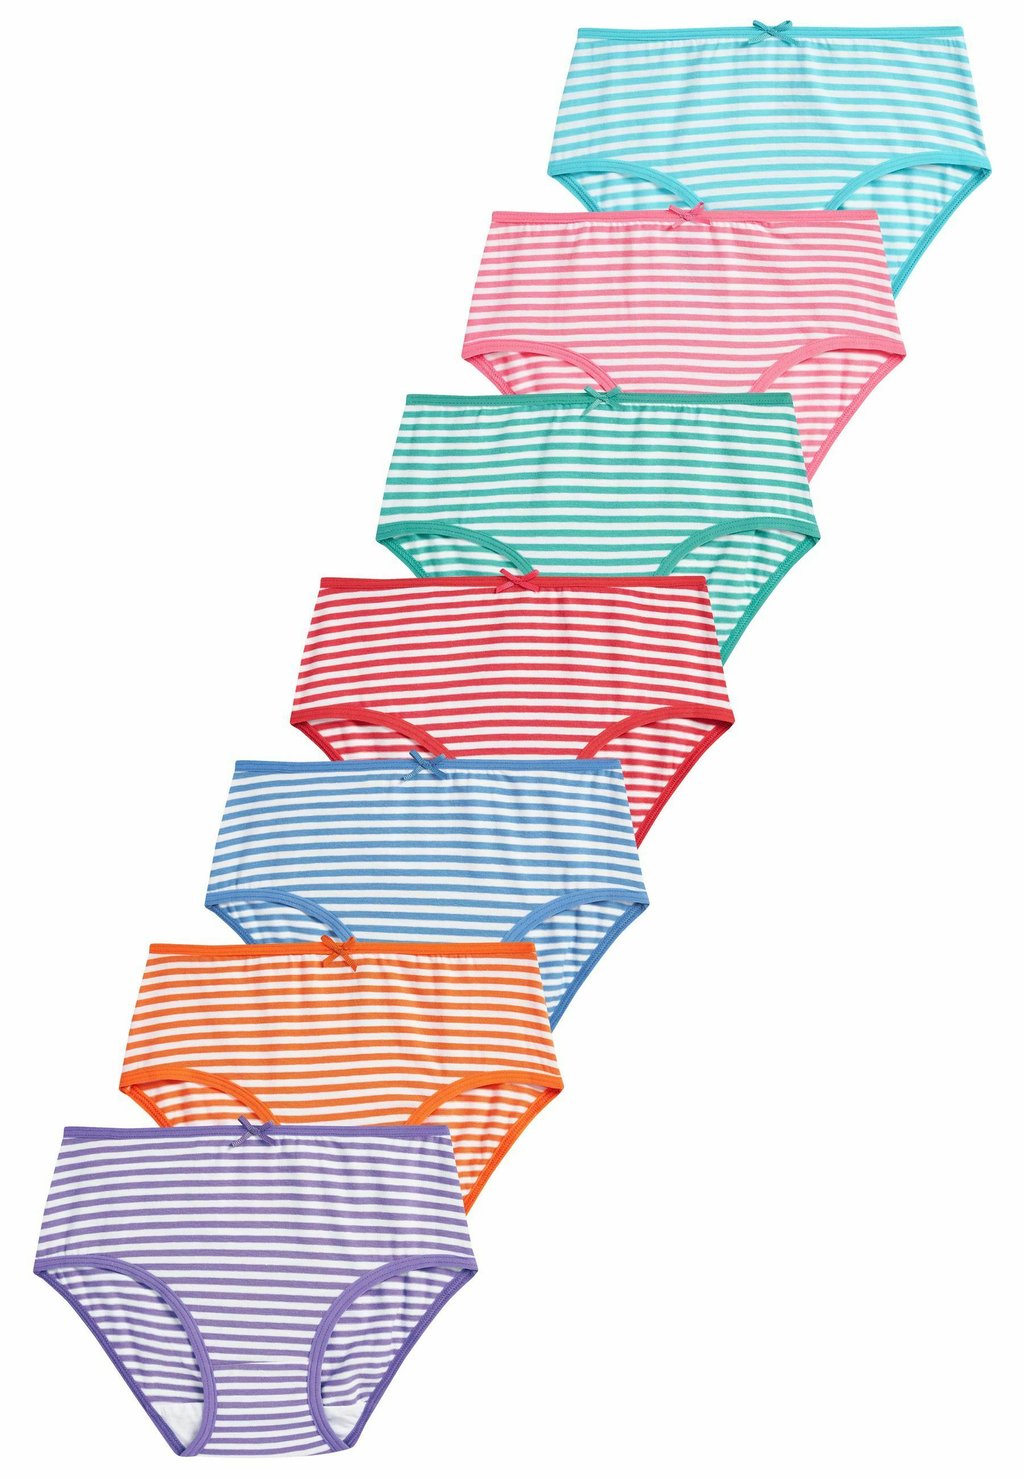 сумка stripe foldaway set next цвет multi colour Трусы 7 PACK Next, цвет multi stripe